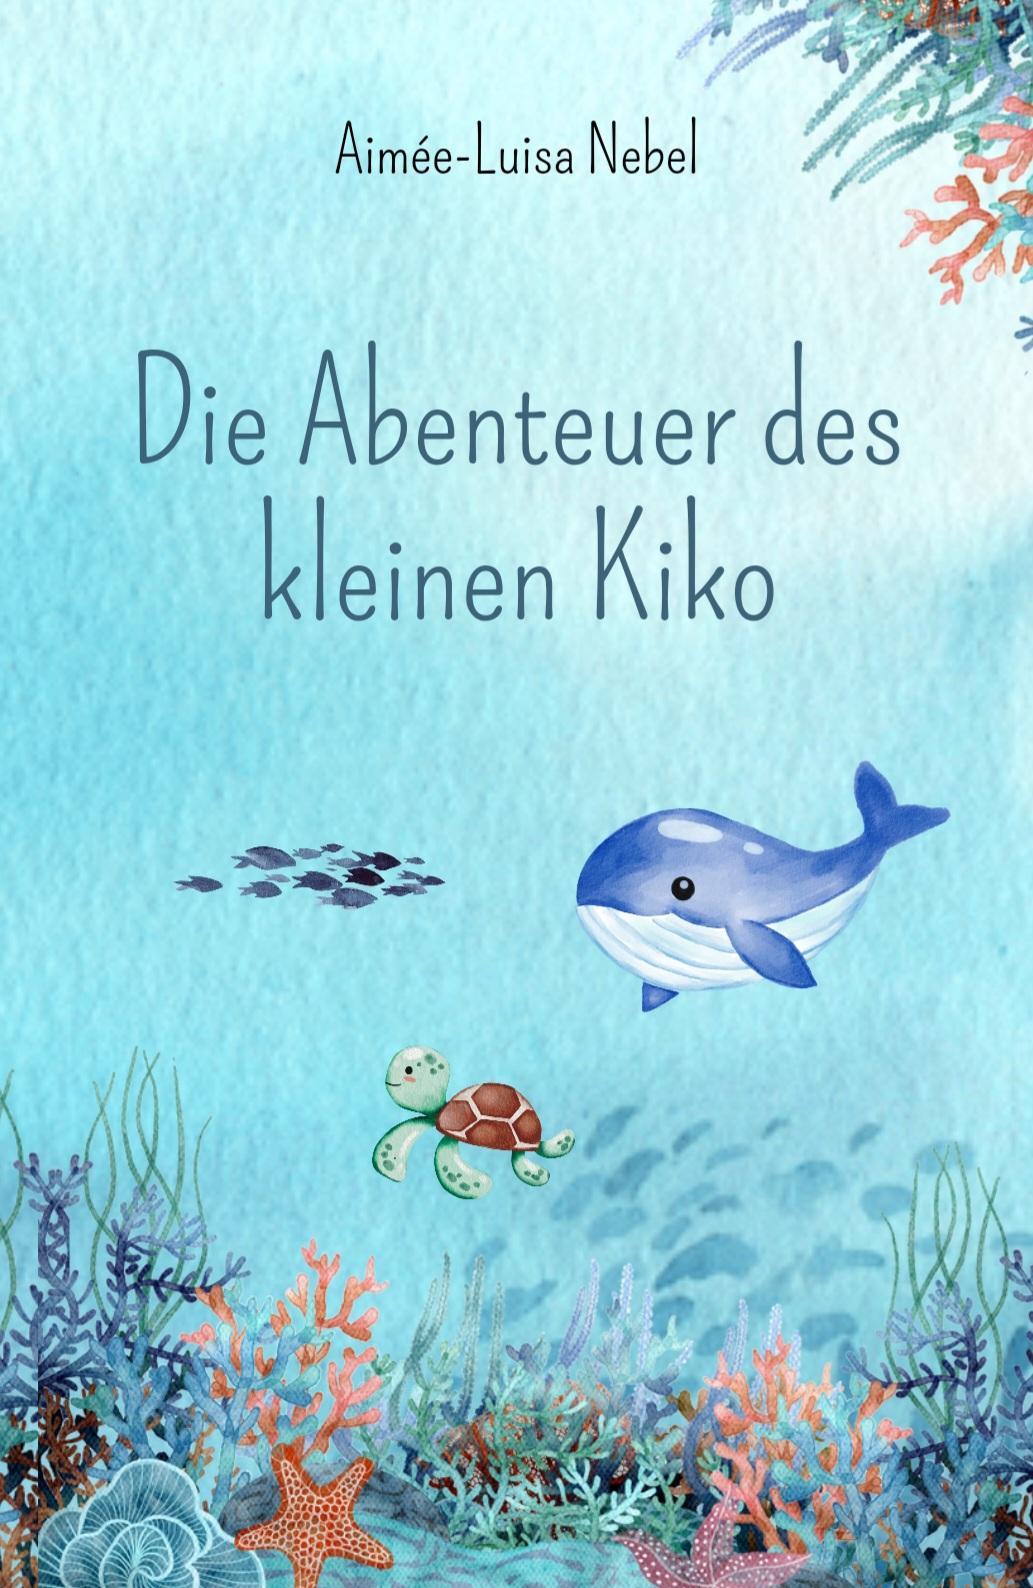 Die Abenteuer des kleinen Kiko von Aimée-Luisa Nebel